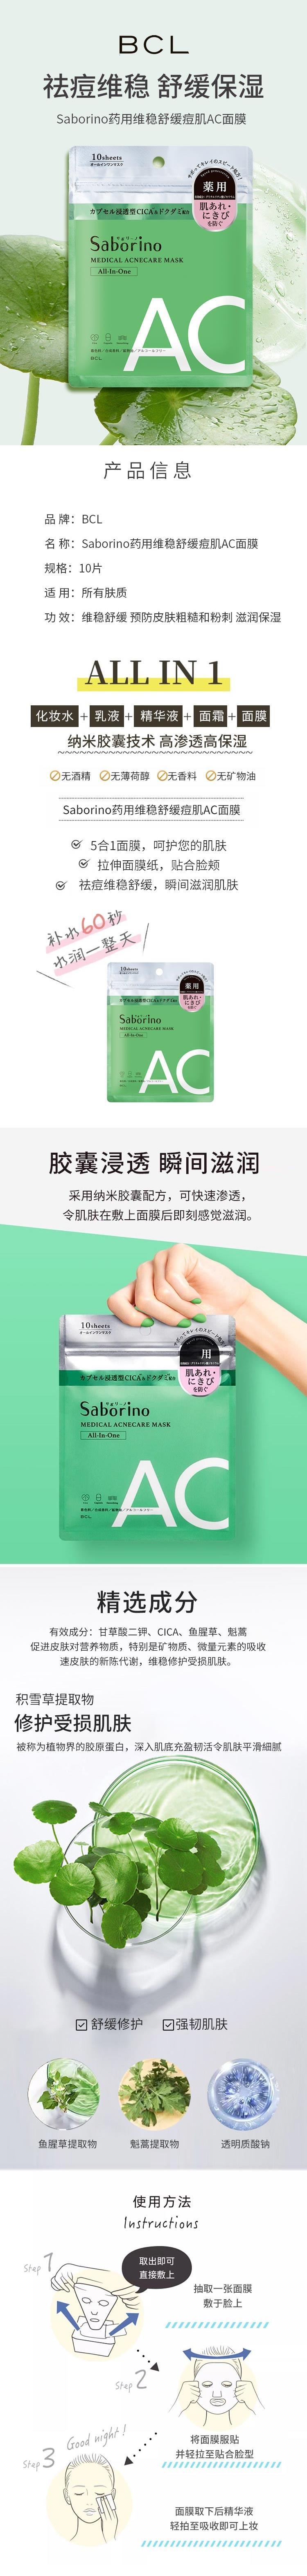 【日本直效郵件】BCL SABORINO 藥用多效合一保濕護理AC抗痘面膜 10片